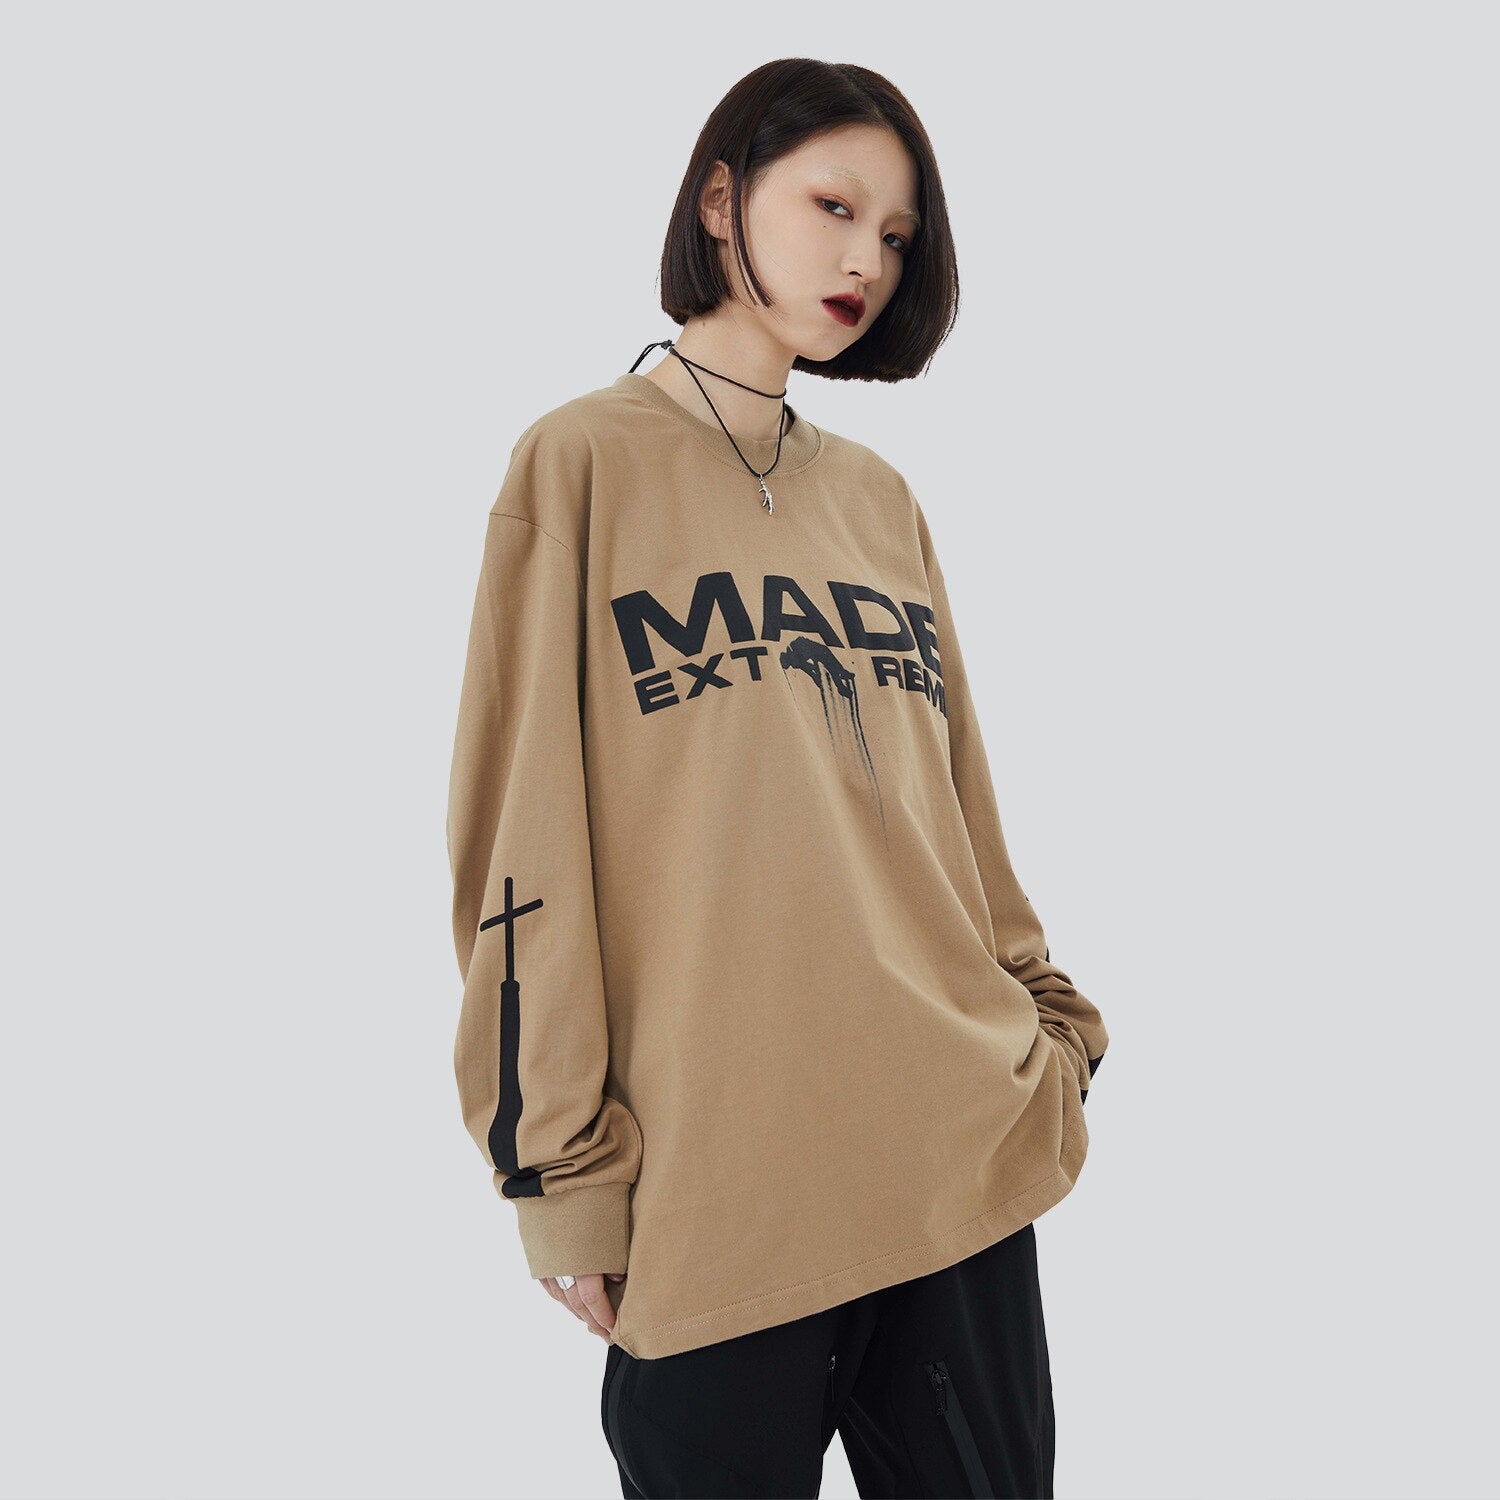 "Black Circle" Unisex Men Women Streetwear Graphic Sweatshirt Daulet Apparel